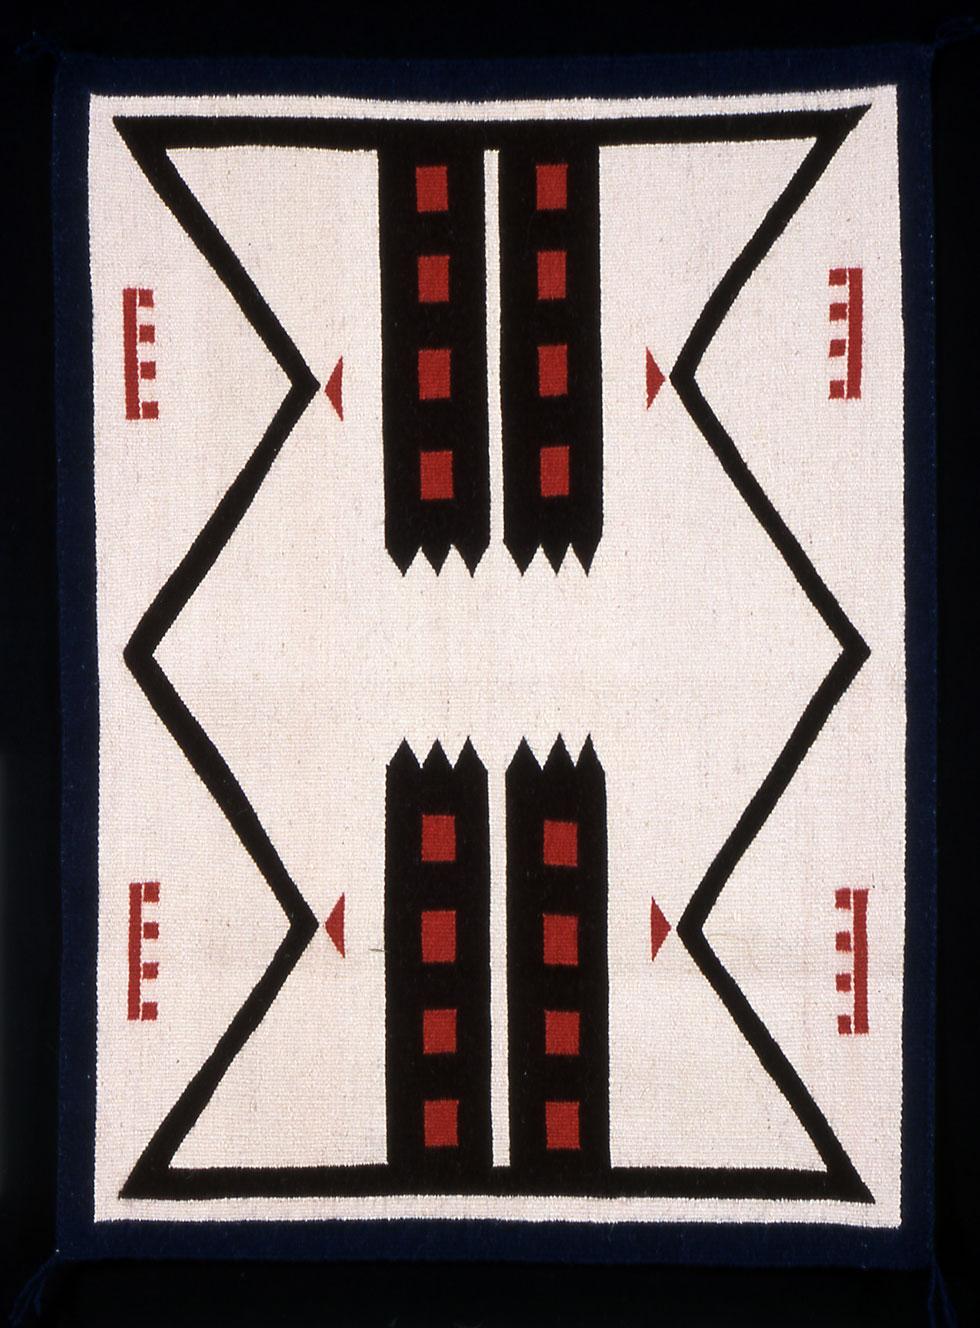 Cheyenne Style, 2002, D.Y. Begay, 25.5 x 35.75in (64.7 x 90.8cm), 2004.05.01.